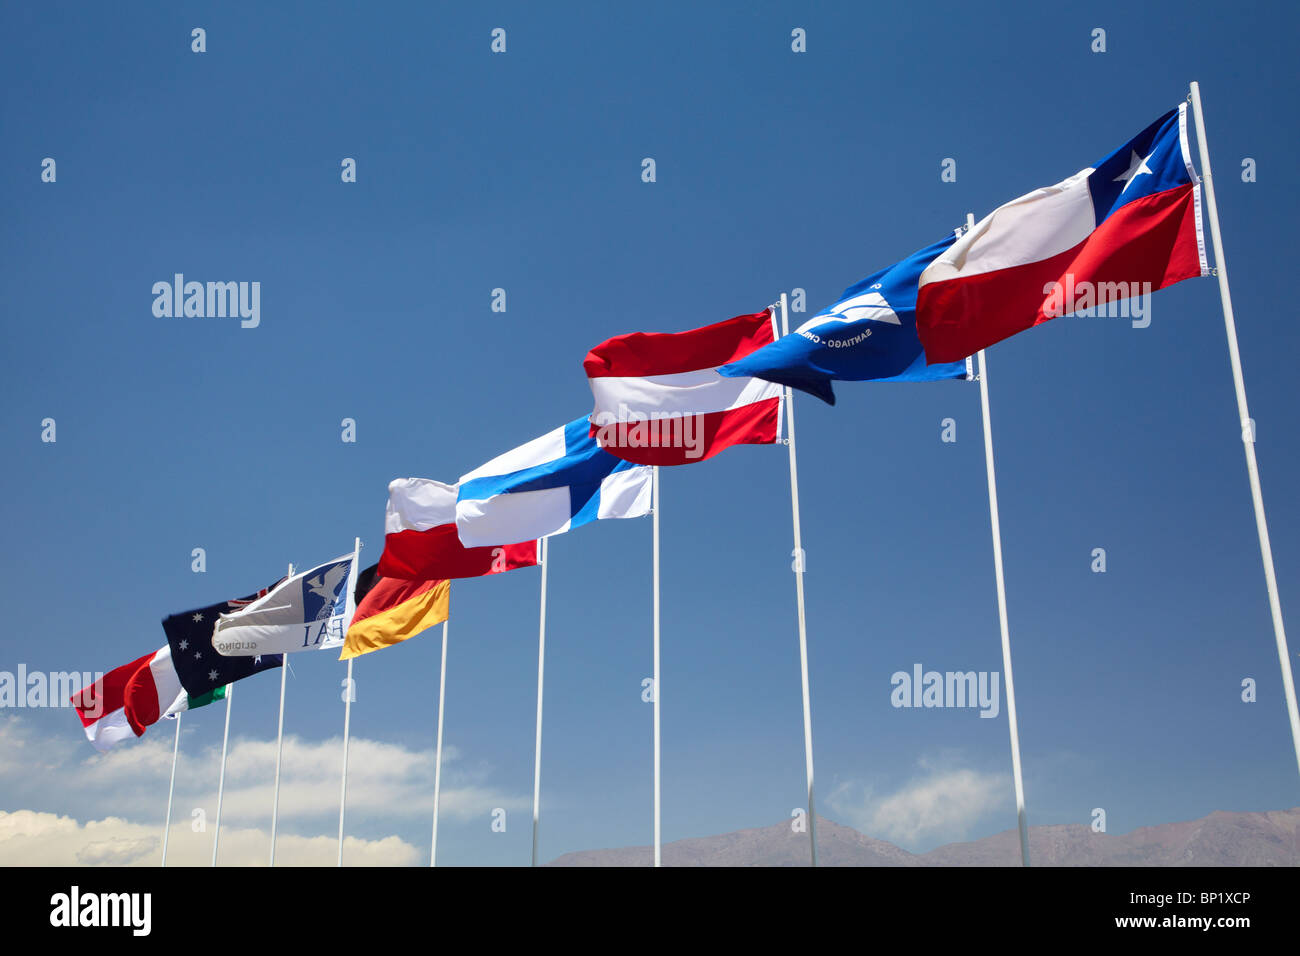 Drapeaux de pays au FAI World Grand Prix de planeur, Santiago, Chili, Amérique du Sud Banque D'Images